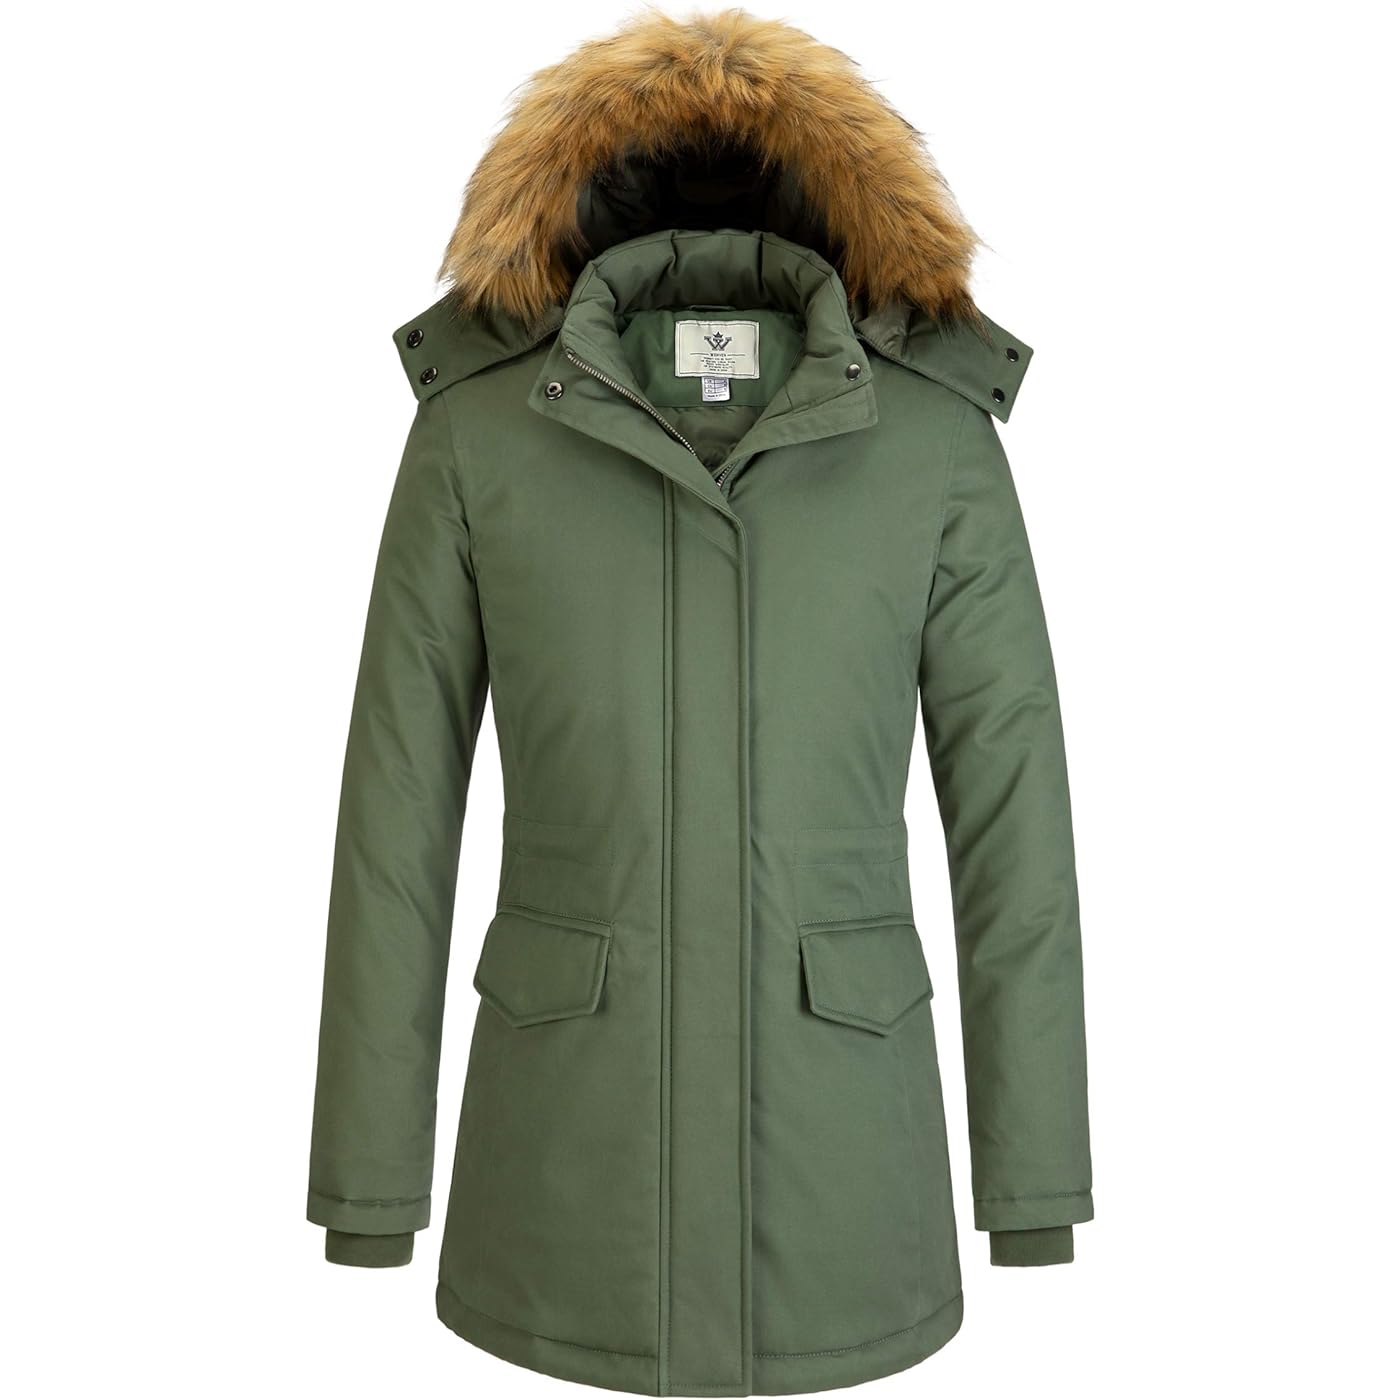 Куртка WenVen Winter Thickened Warm Mid Length Windproof and Waterproof With a Detachable Fur Hat, зеленый куртка modtex демисезон зима средней длины силуэт свободный ветрозащитная размер 54 бежевый